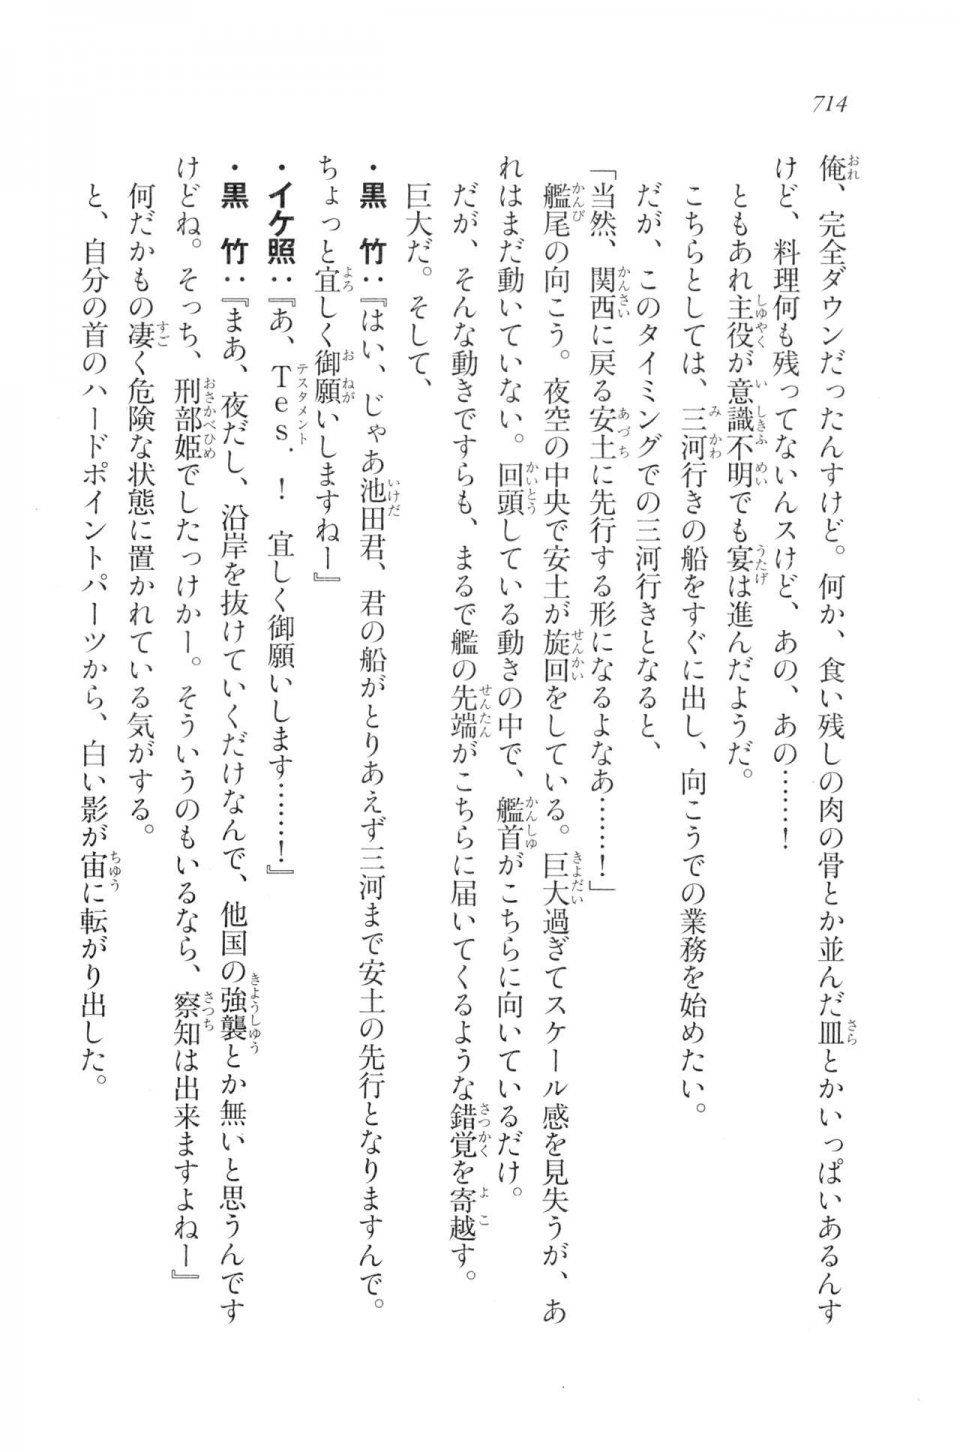 Kyoukai Senjou no Horizon LN Vol 20(8B) - Photo #714